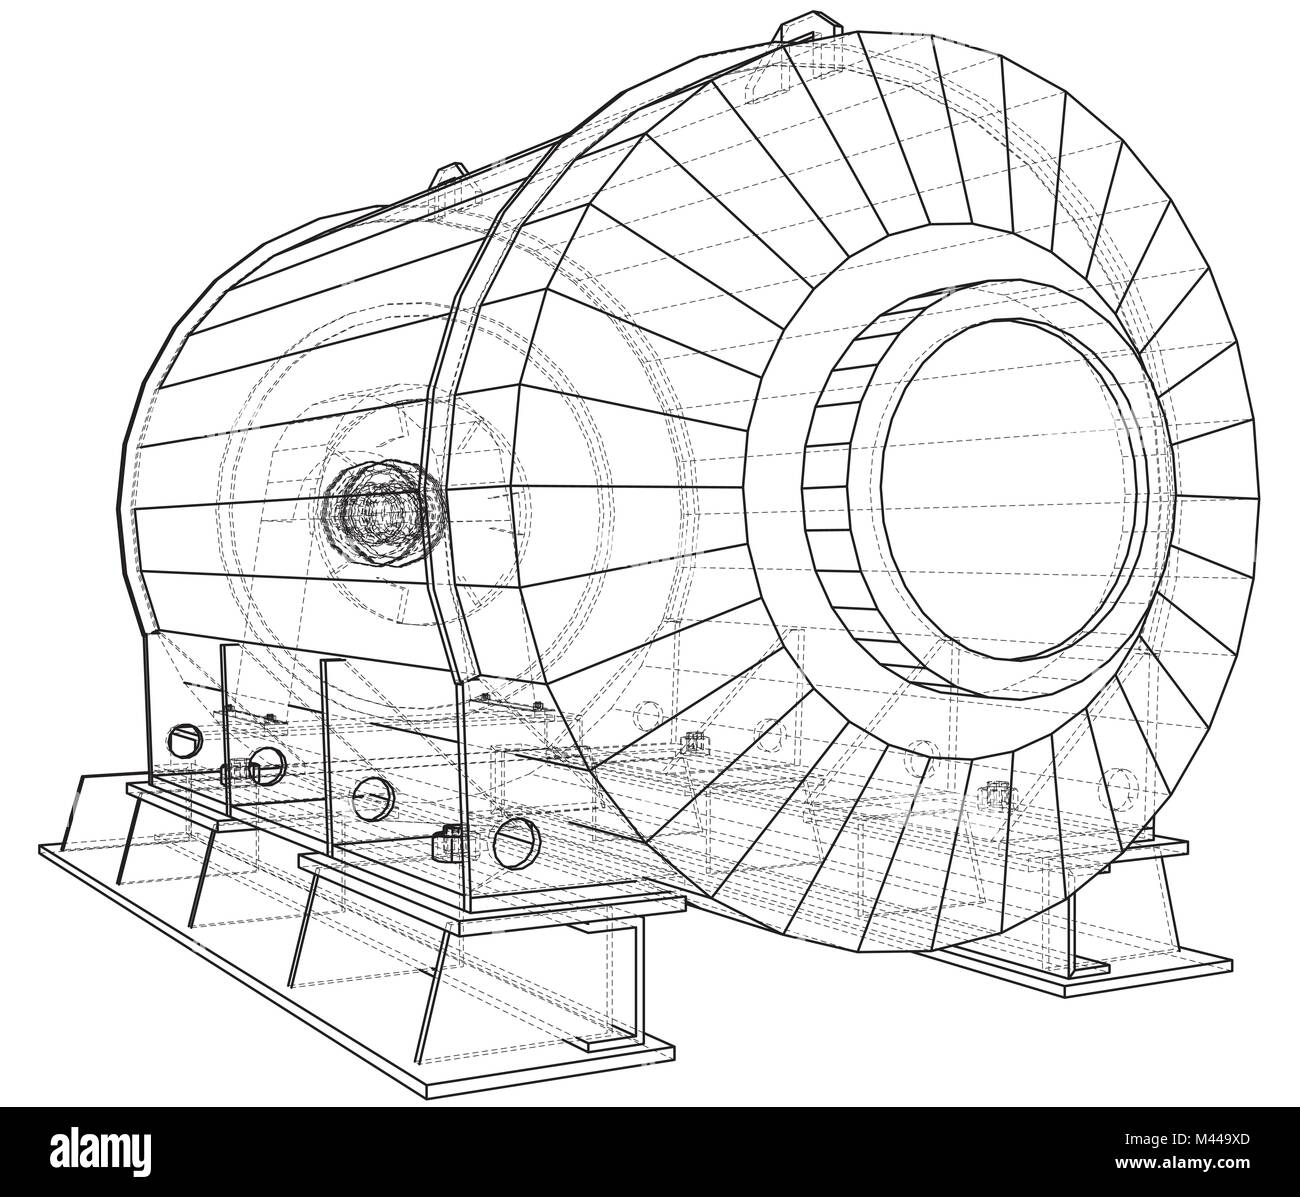 Illustrazione di vettore di unità motore industria petrolifera. Creato illustrazione di 3d. Illustrazione Vettoriale